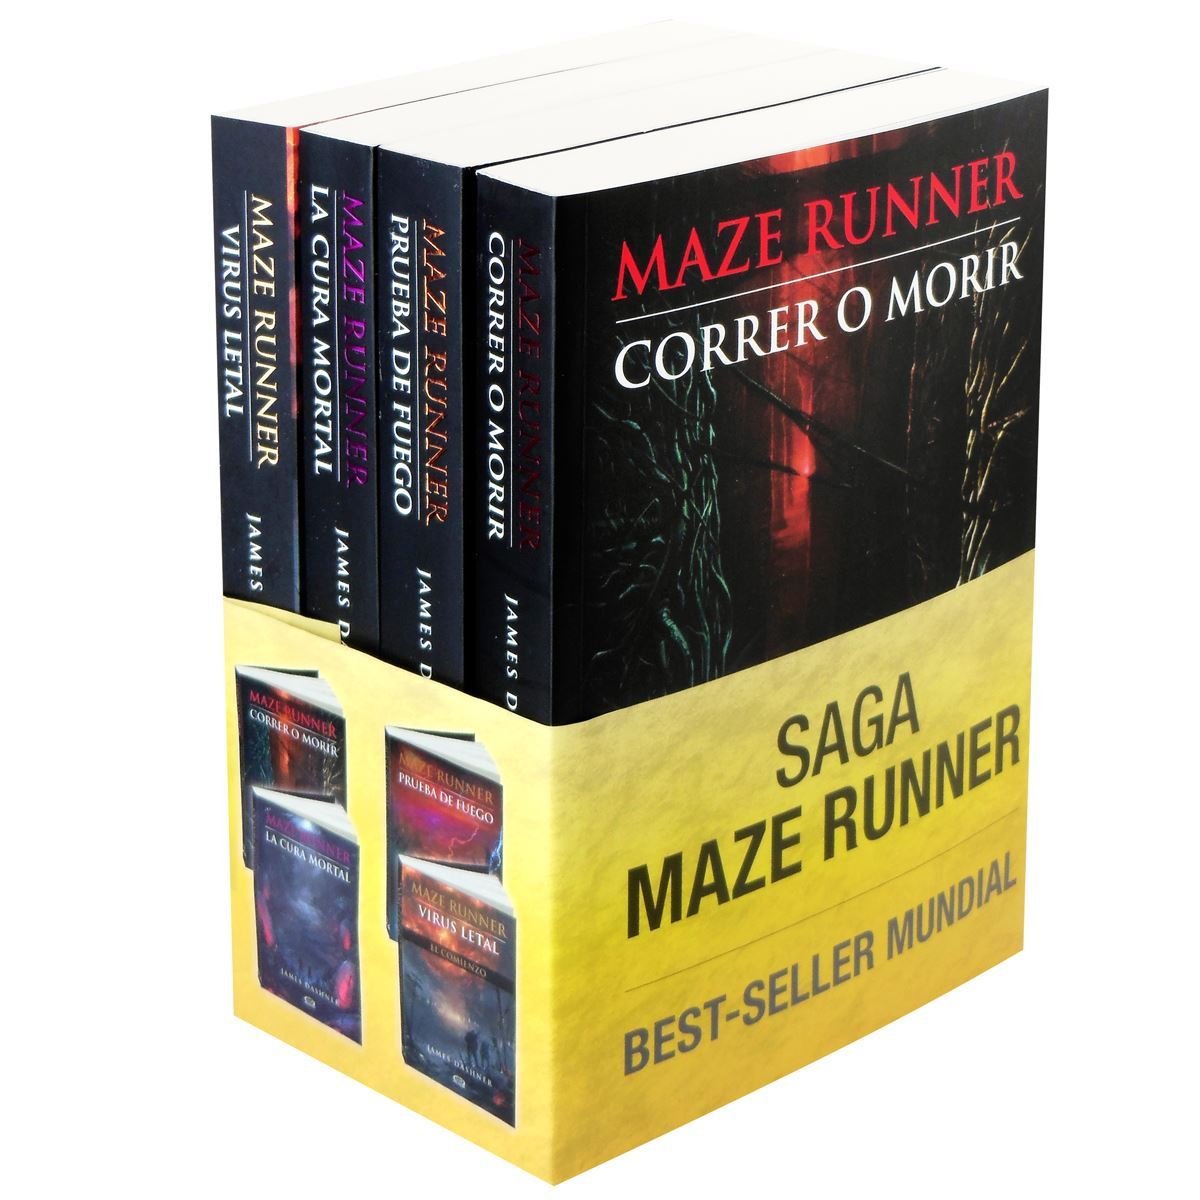 Principal estreia da semana, Maze Runner: A Cura Mortal fecha trilogia da  saga